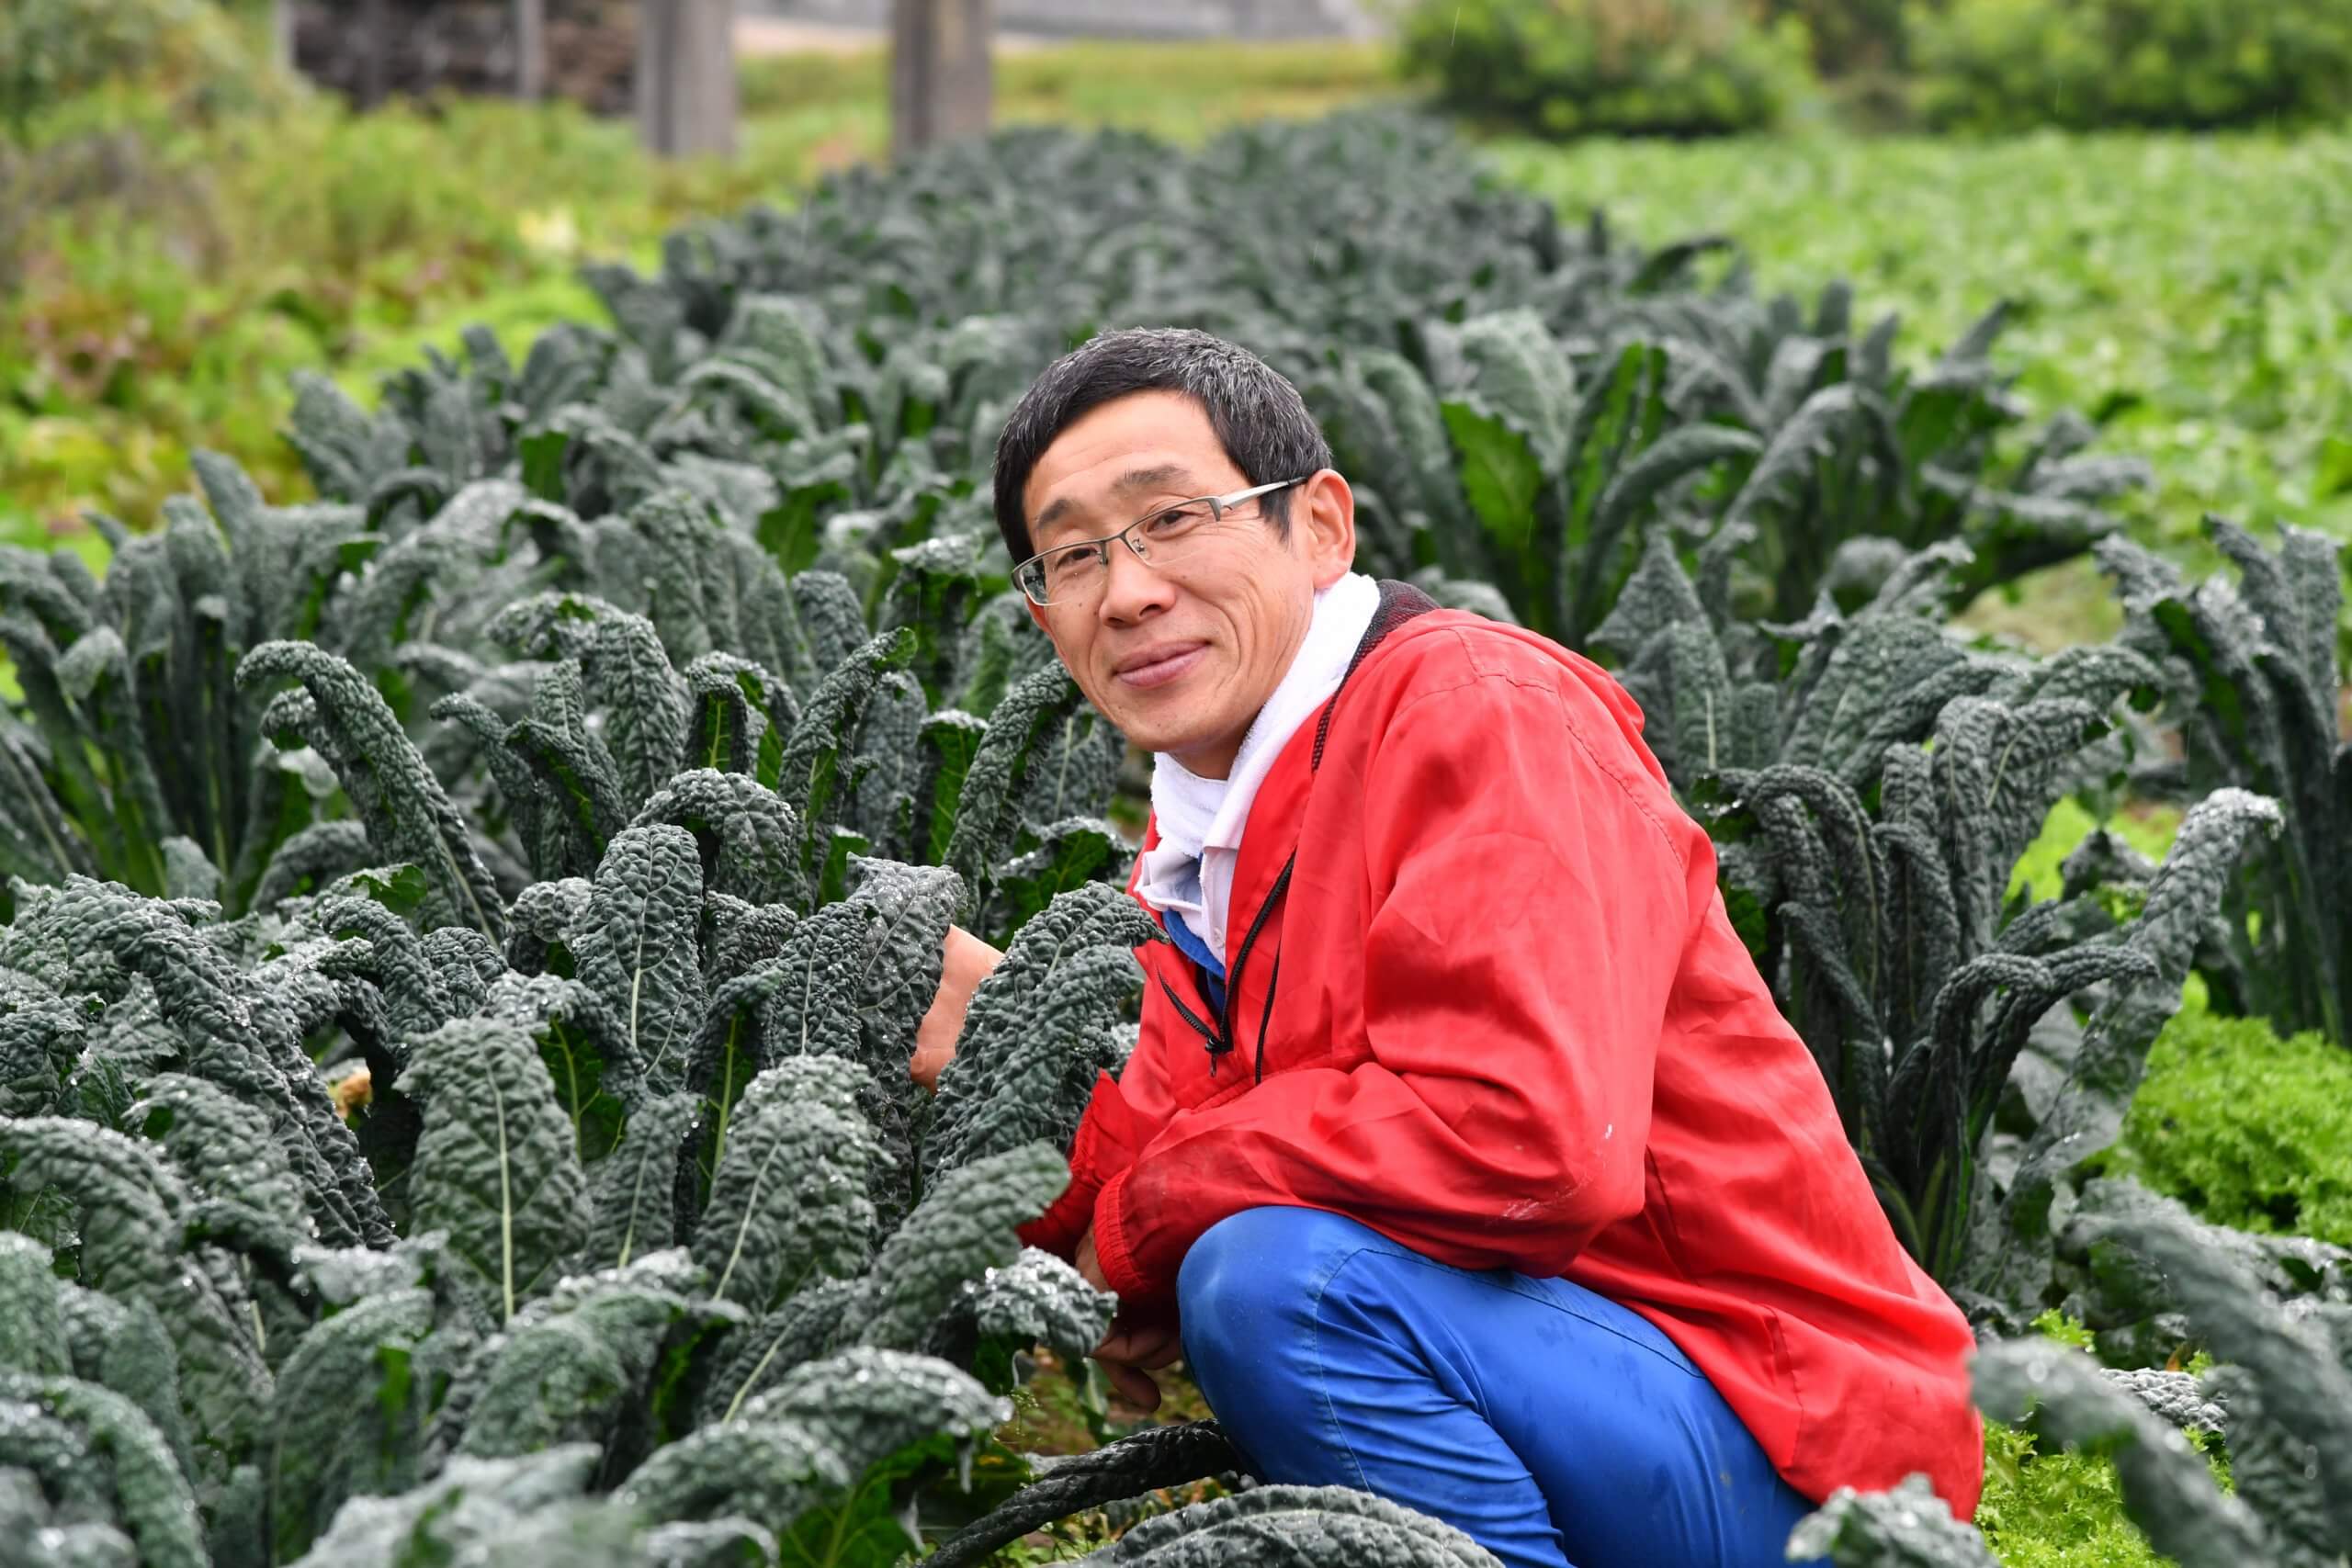 作り続けて年 いわきの西洋野菜名人 カルチべ取材班 現場参上 カルチベ 農耕と園藝online